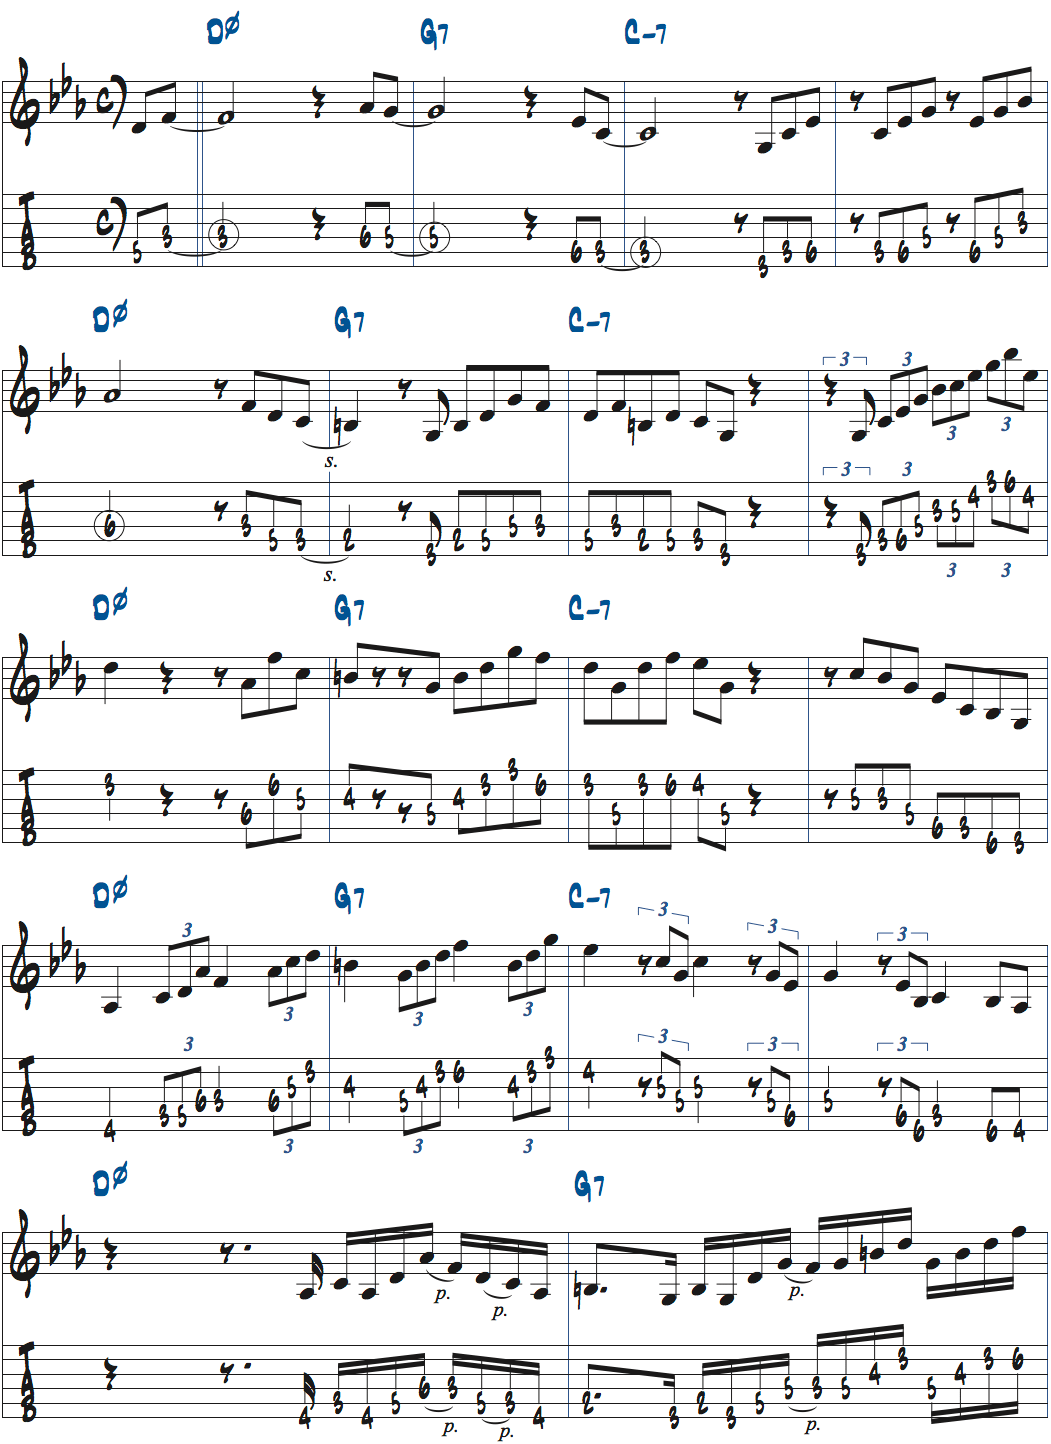 さまざまなリズムパターンを使ったDm7(b5)-G7-Cm7でのコードトーンアドリブ例ページ1楽譜